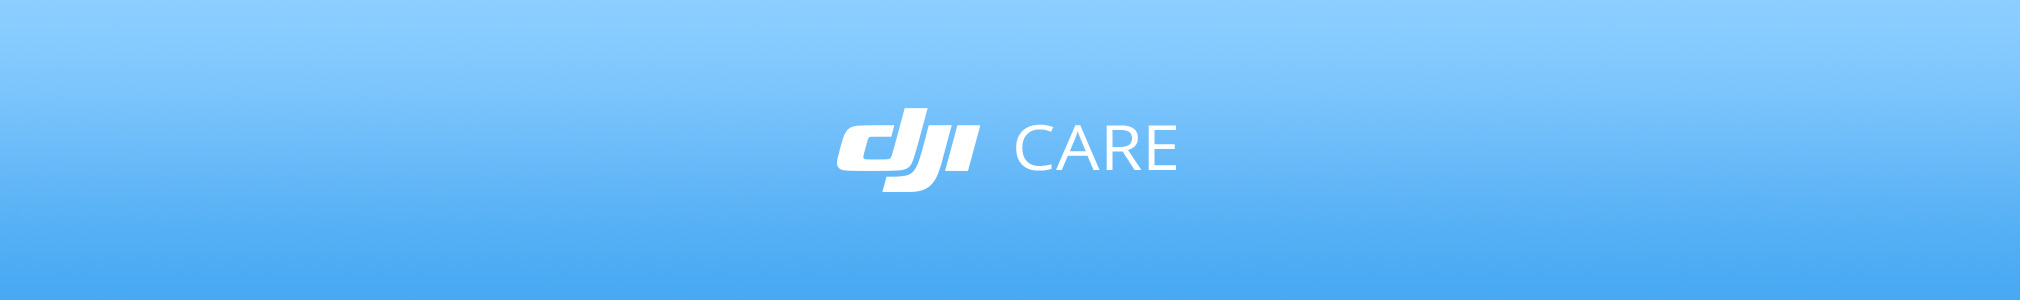 DJI Care